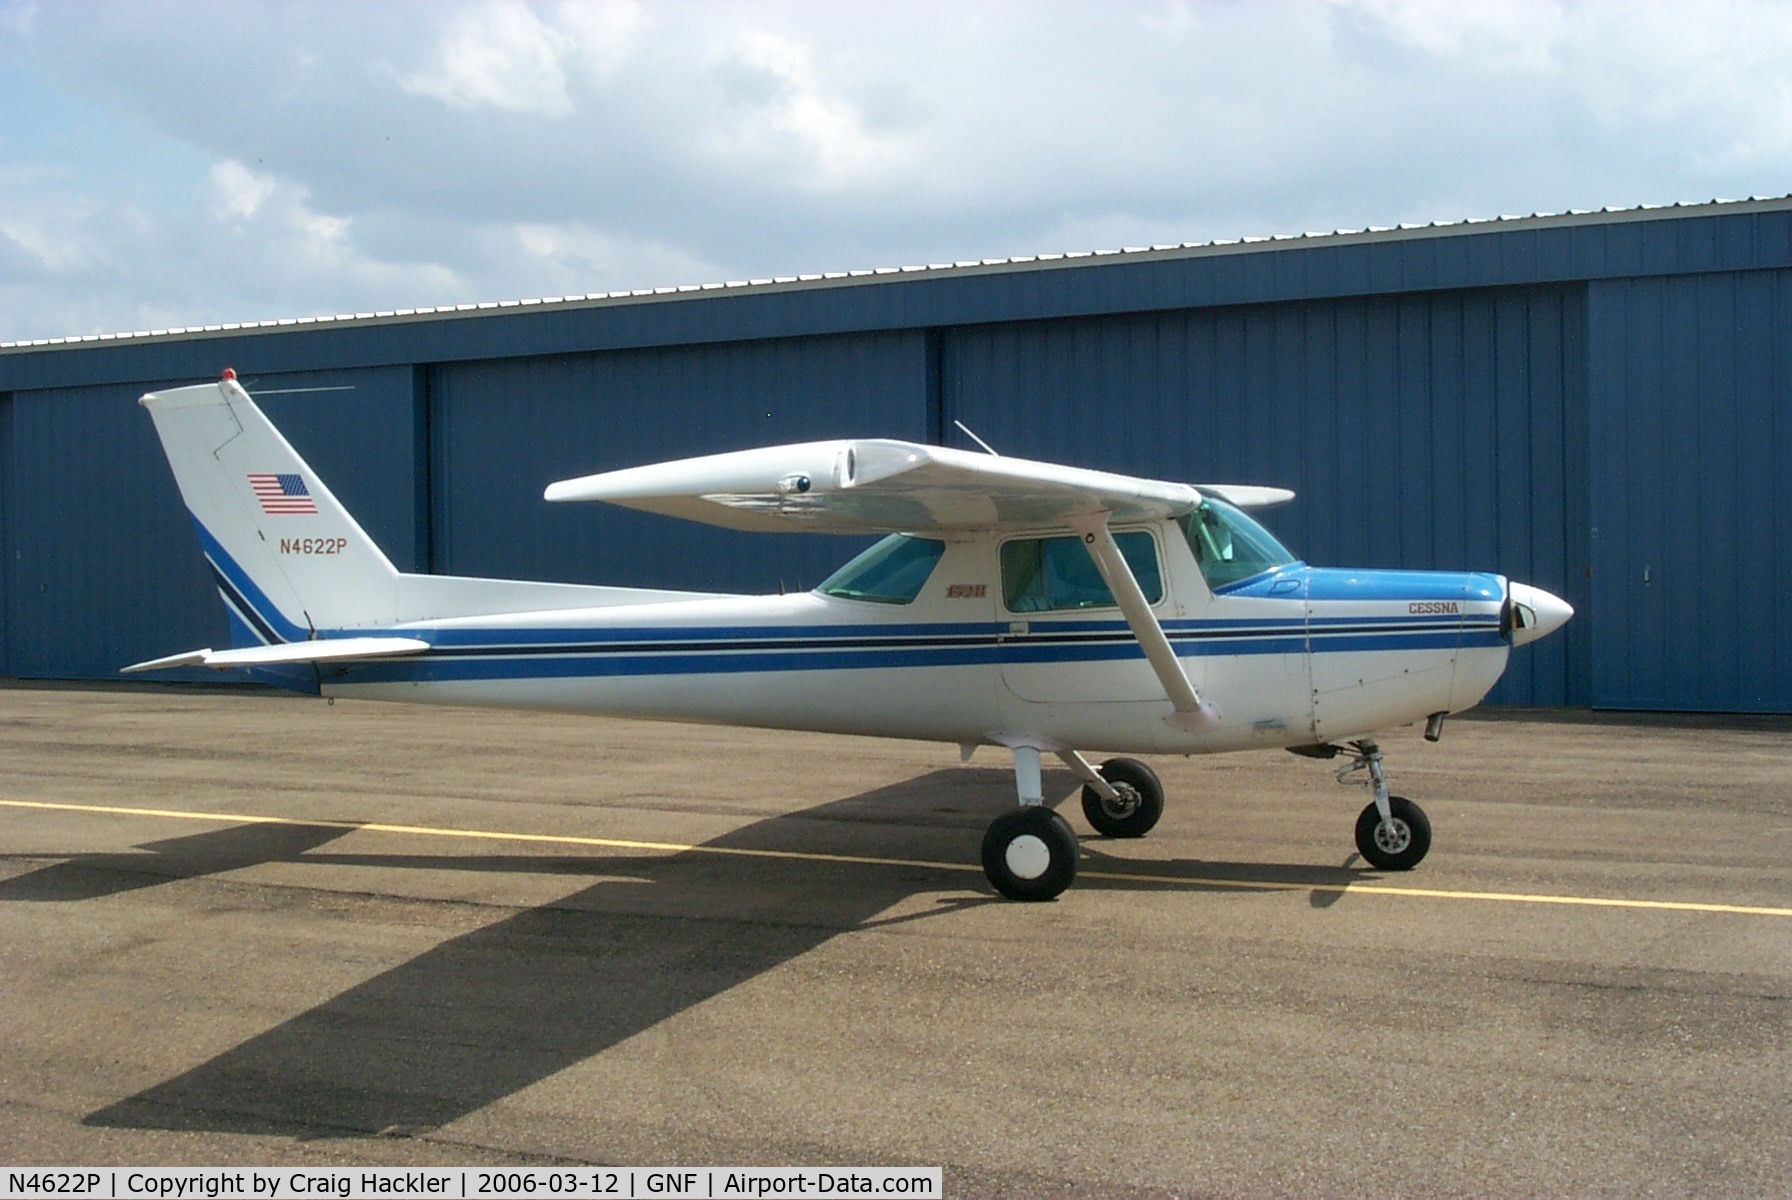 N4622P, 1980 Cessna 152 C/N 15284785, Freshly washed